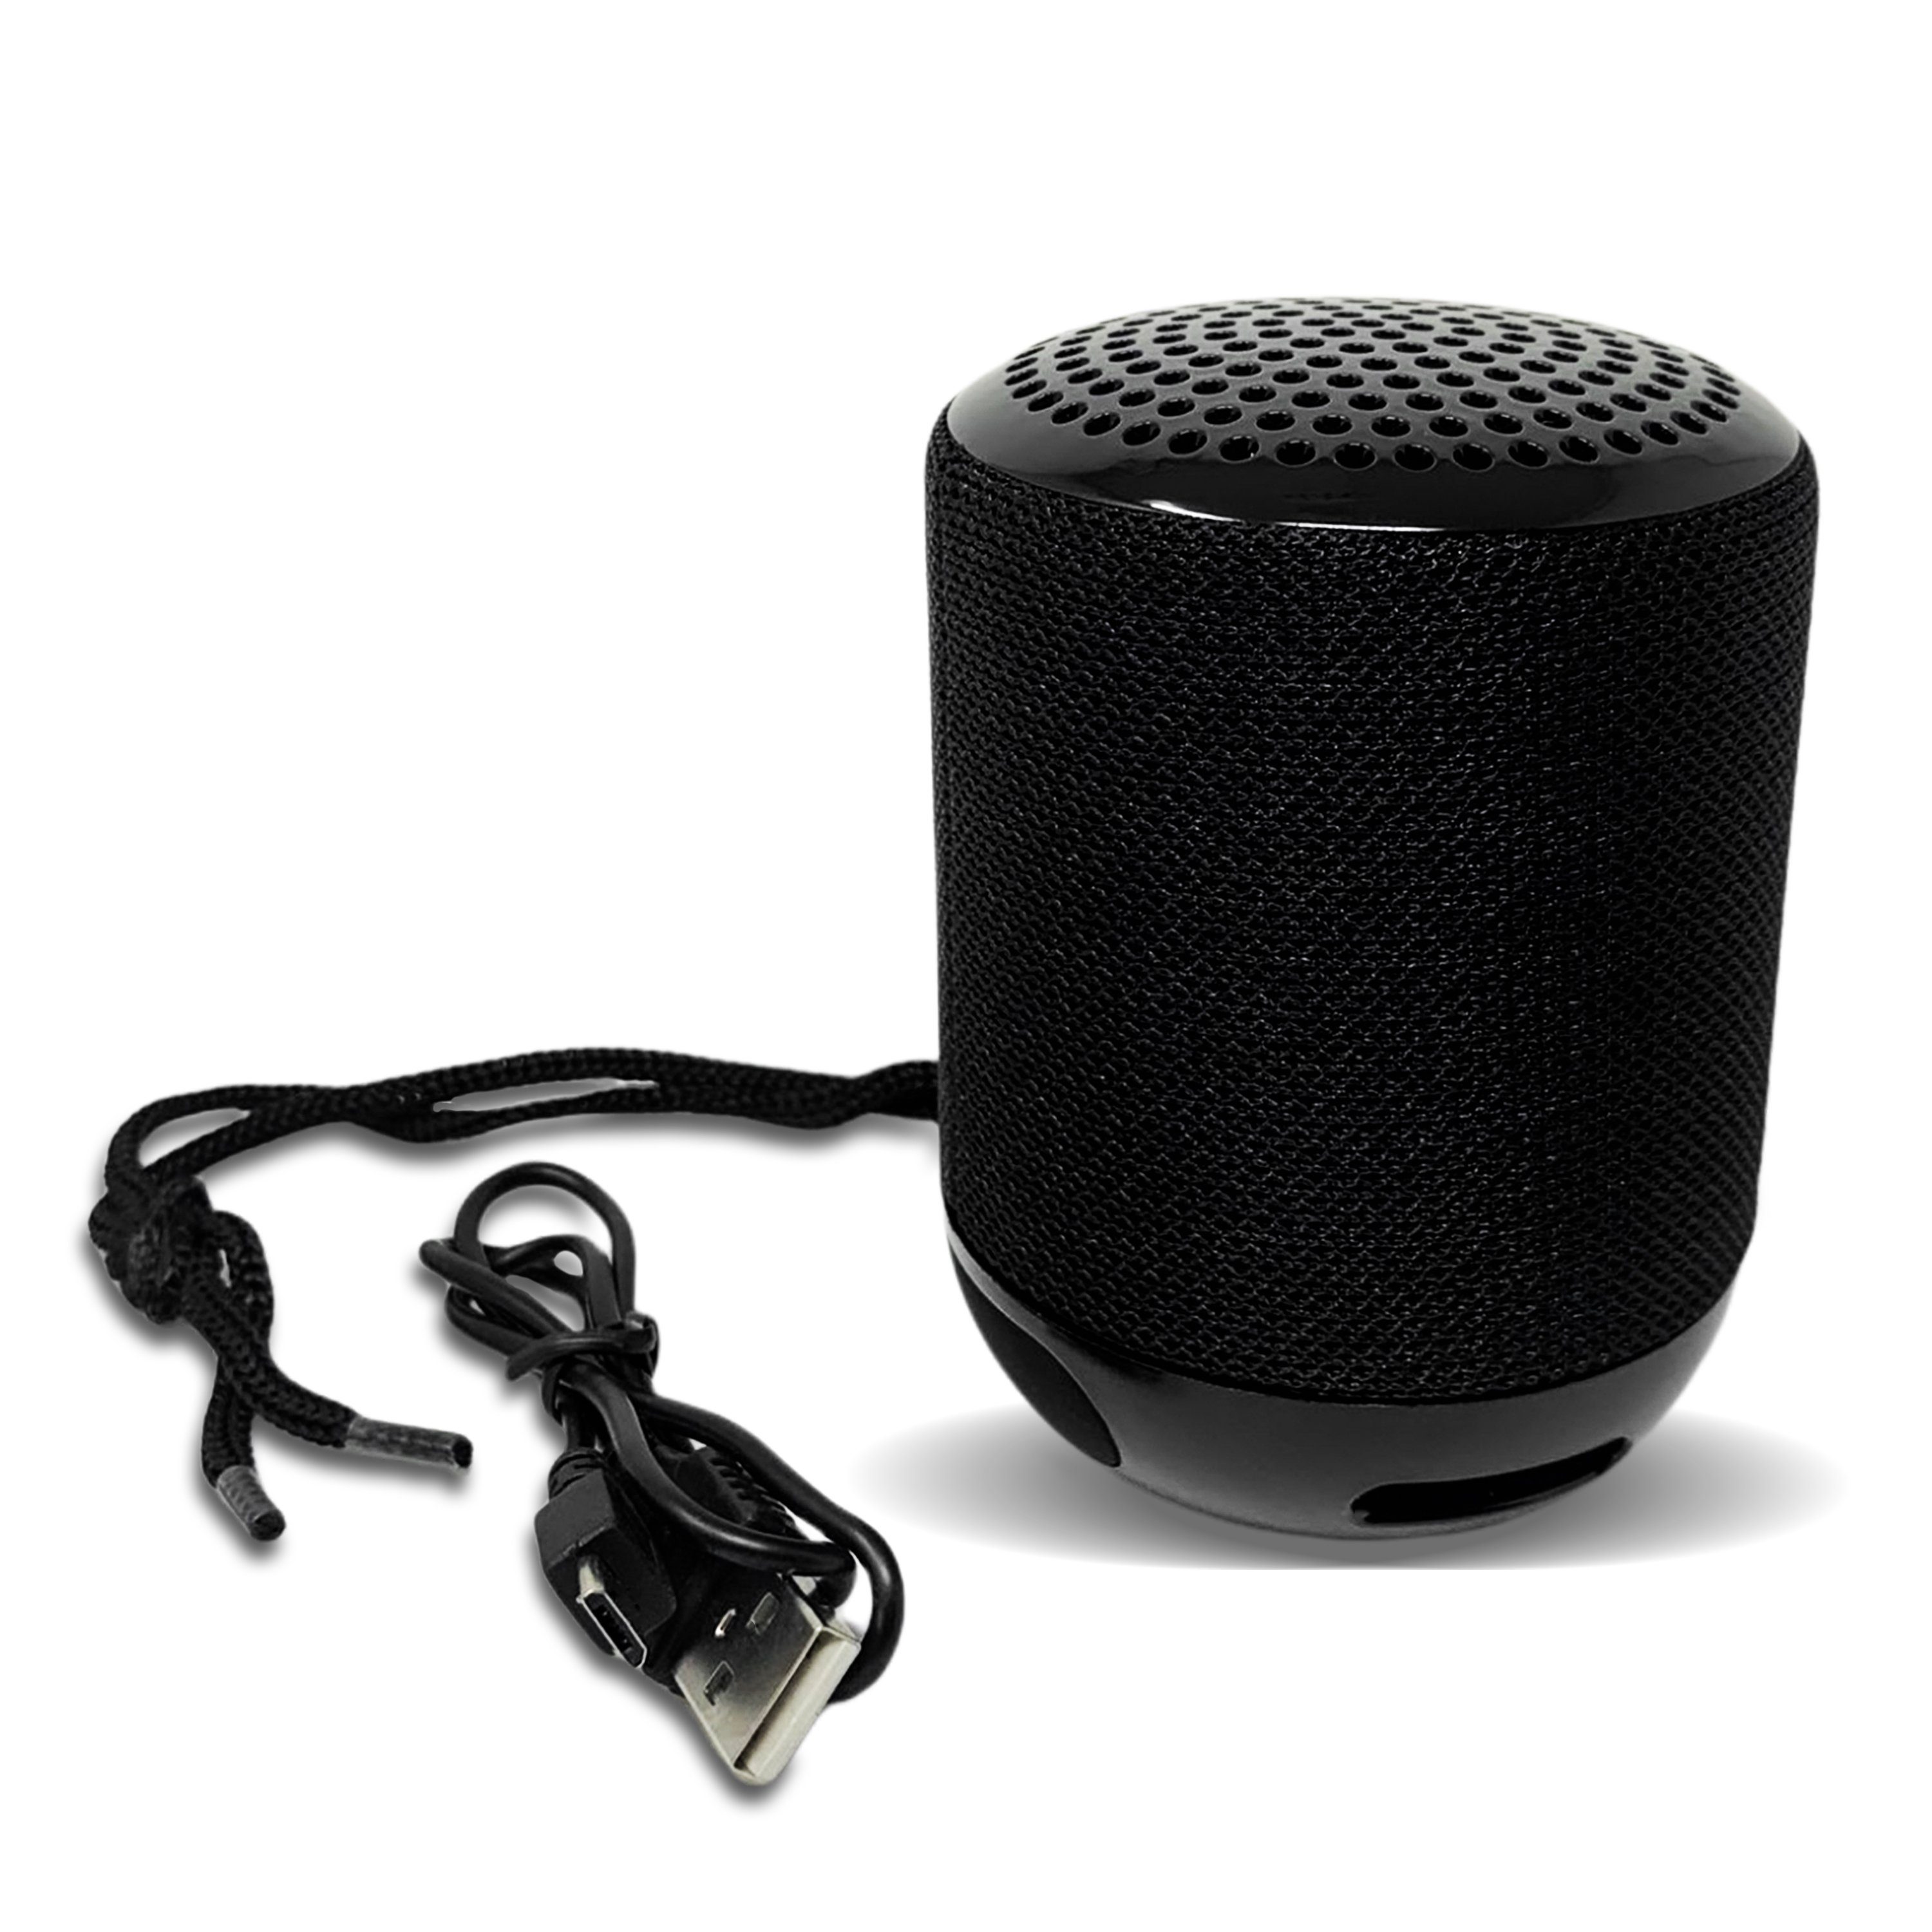 H-basics Bluetooth Lautsprecher - Wireless Speaker, Tragbare Musikbox,  Kabellos mit Akku, Ideal für Outdoor Camping Wandern Pool Bluetooth- Lautsprecher online kaufen | OTTO